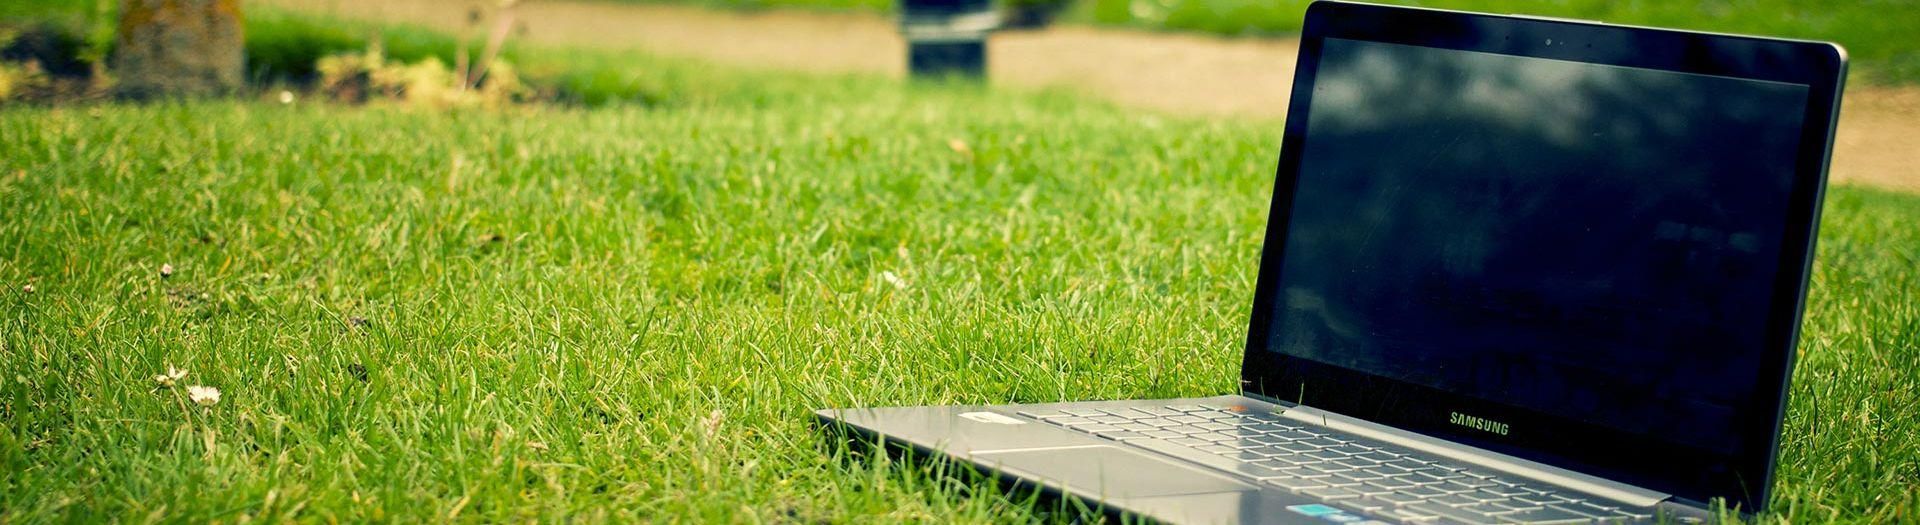 laptop-notebook-grass-meadow-9b558d75 Direct